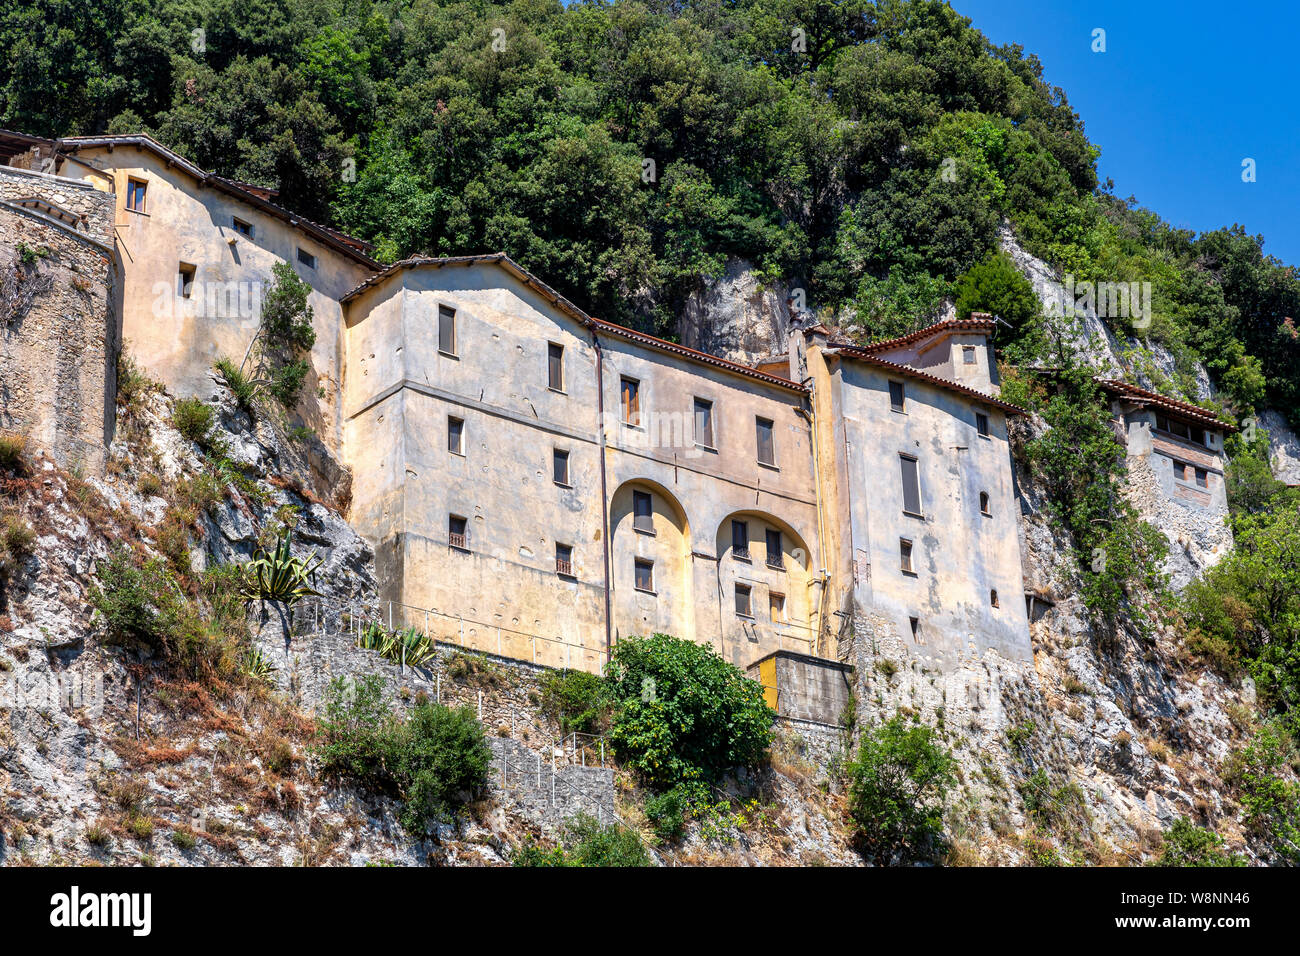 The Hermitage of Greccio Sanctuary, Greccio, Rieti Province, Italy Stock Photo